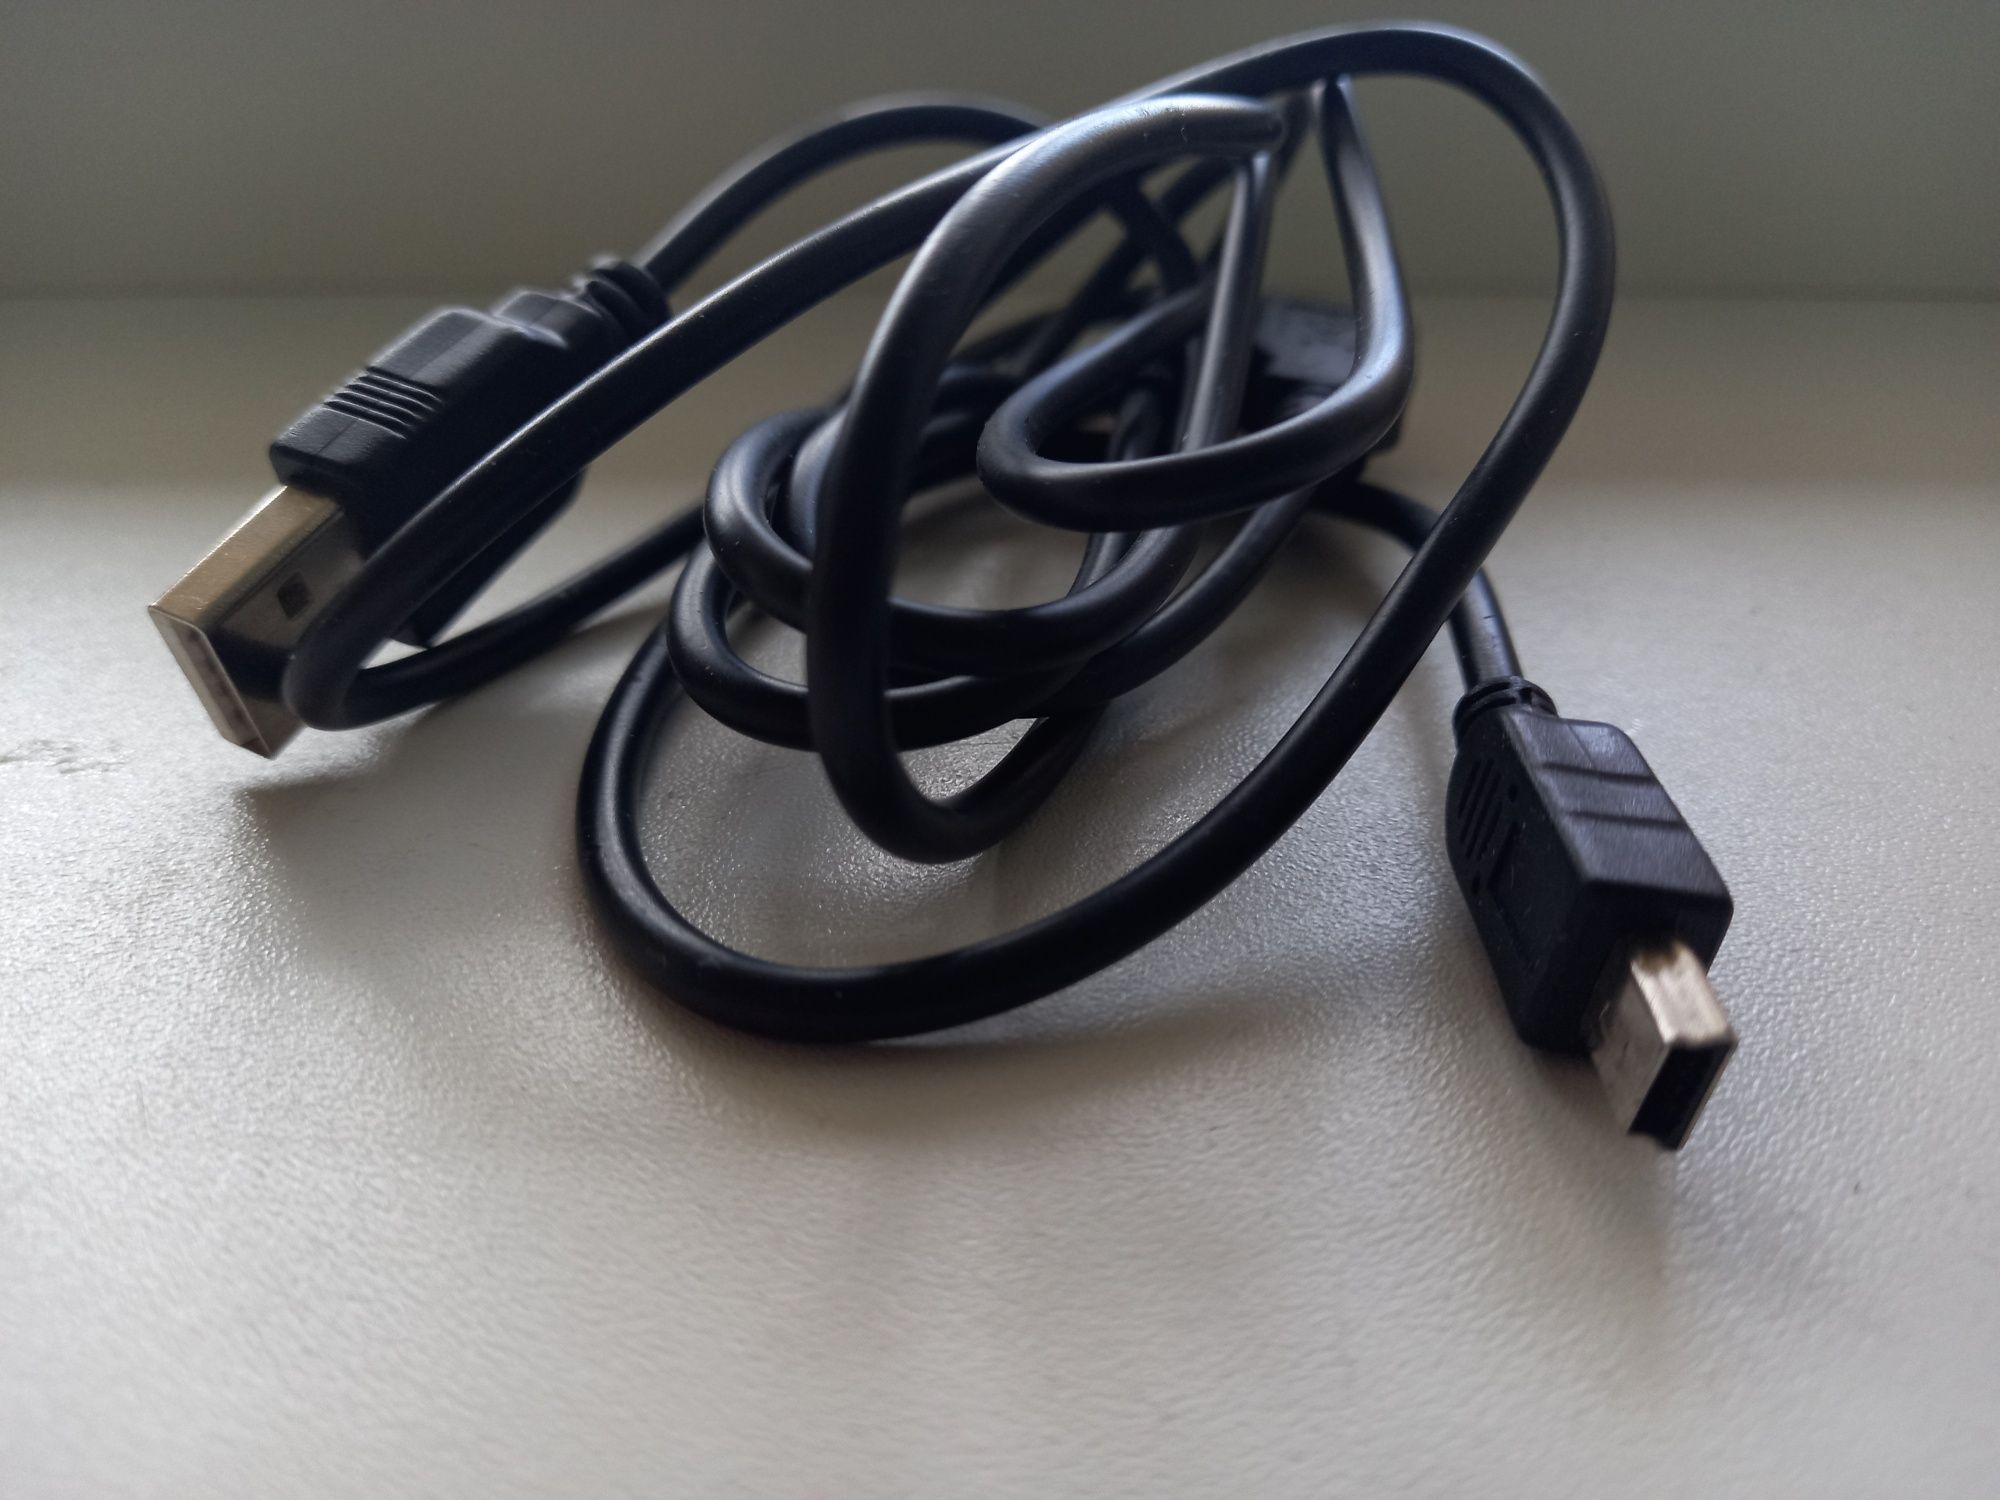 Шнур mini-USB питания для видеорегистратора и электронной книги, 80 см